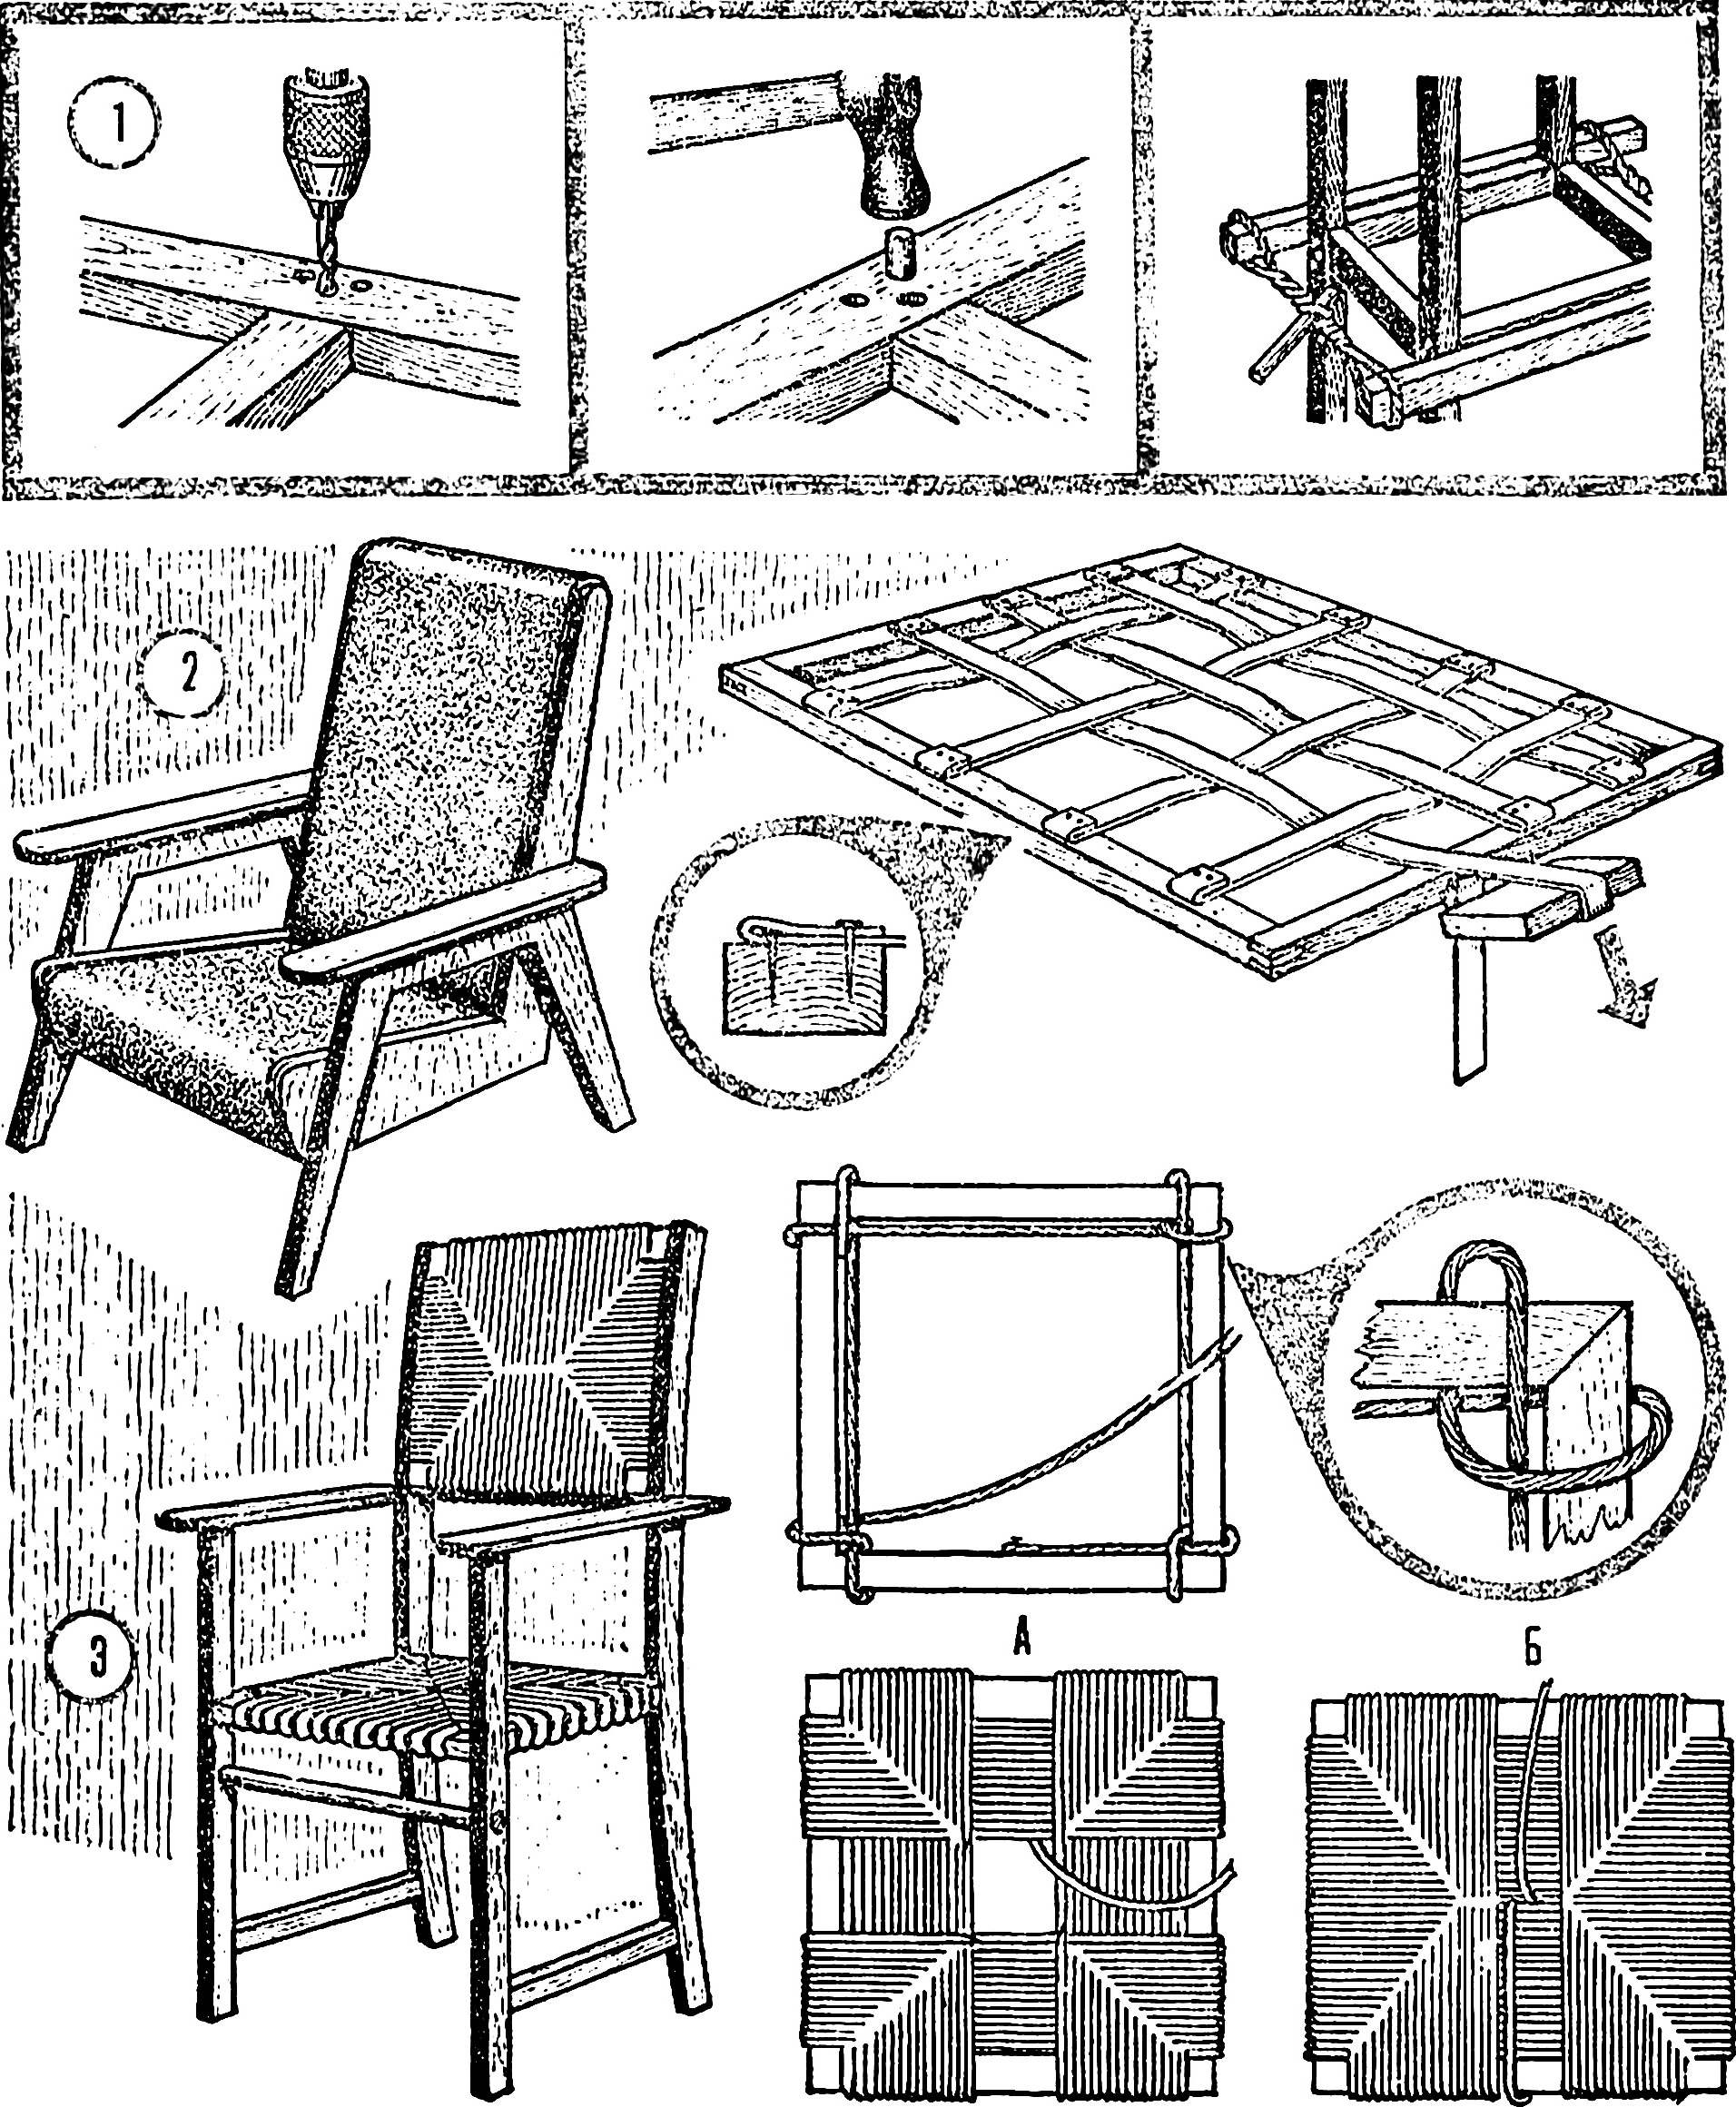 Обновляем старые стулья: 4 мастер-класса, 70 фото до и после, идеи